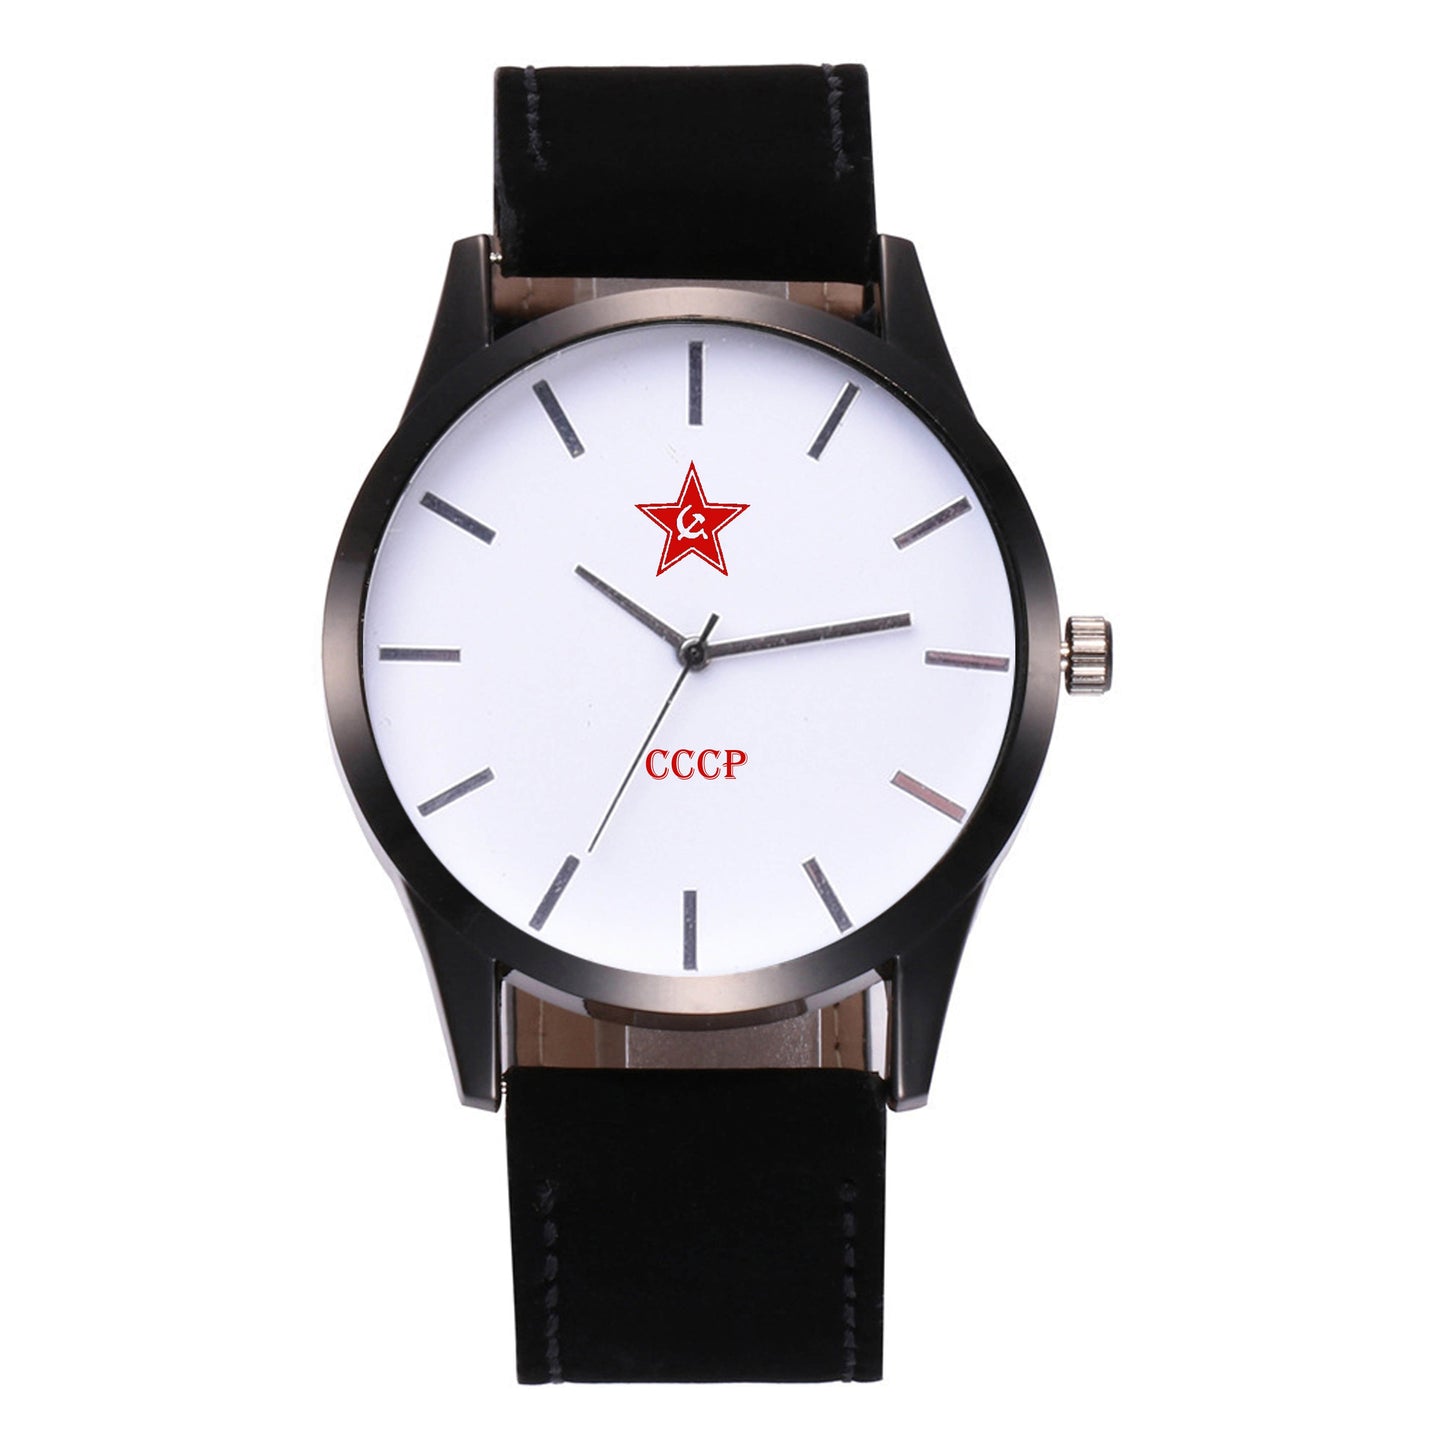 Ръчен часовник СССР с бял циферблат - shlio-bg.com